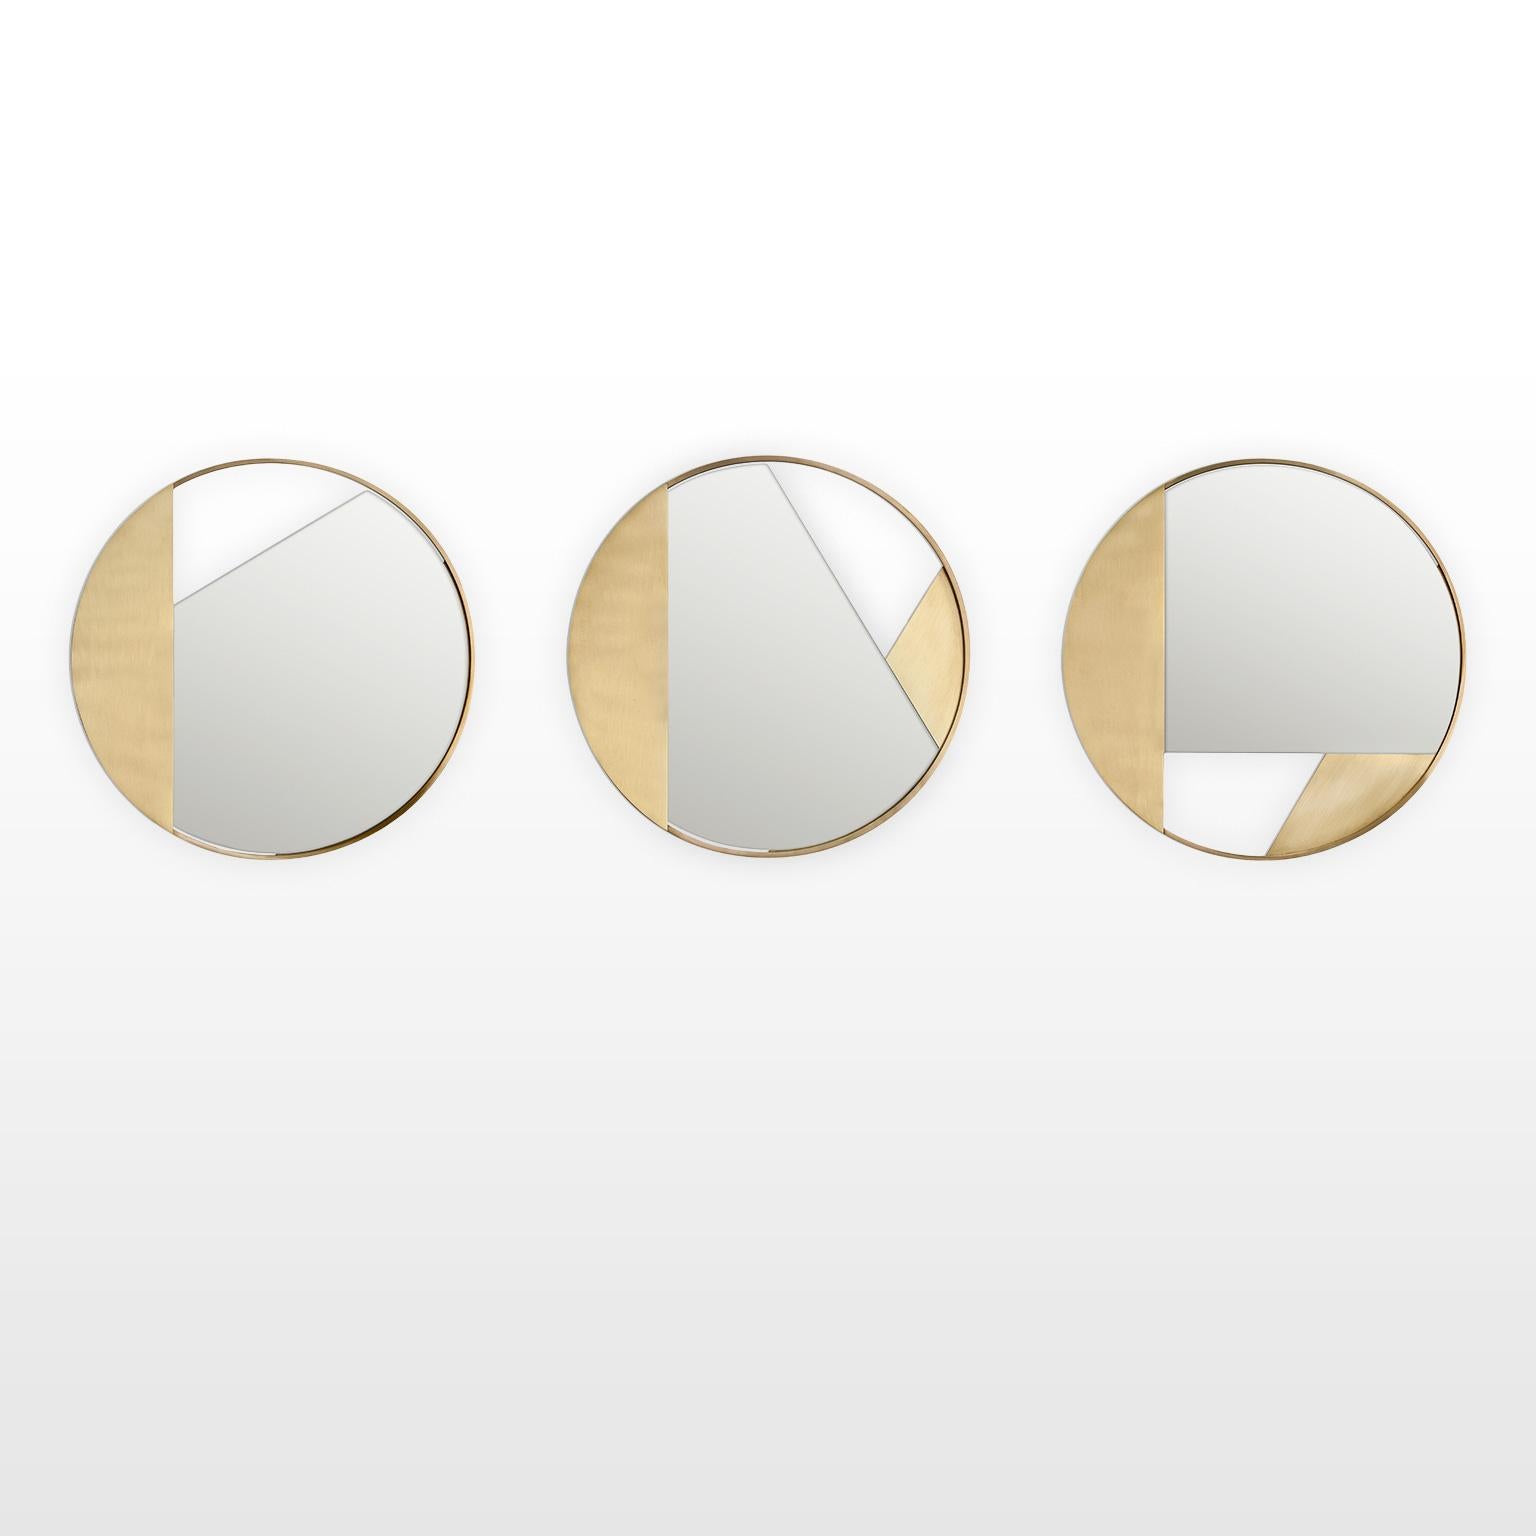 Contemporary Limited Edition Brass Mirror, Revolution 90 V3 by Edizione Limitata For Sale 3